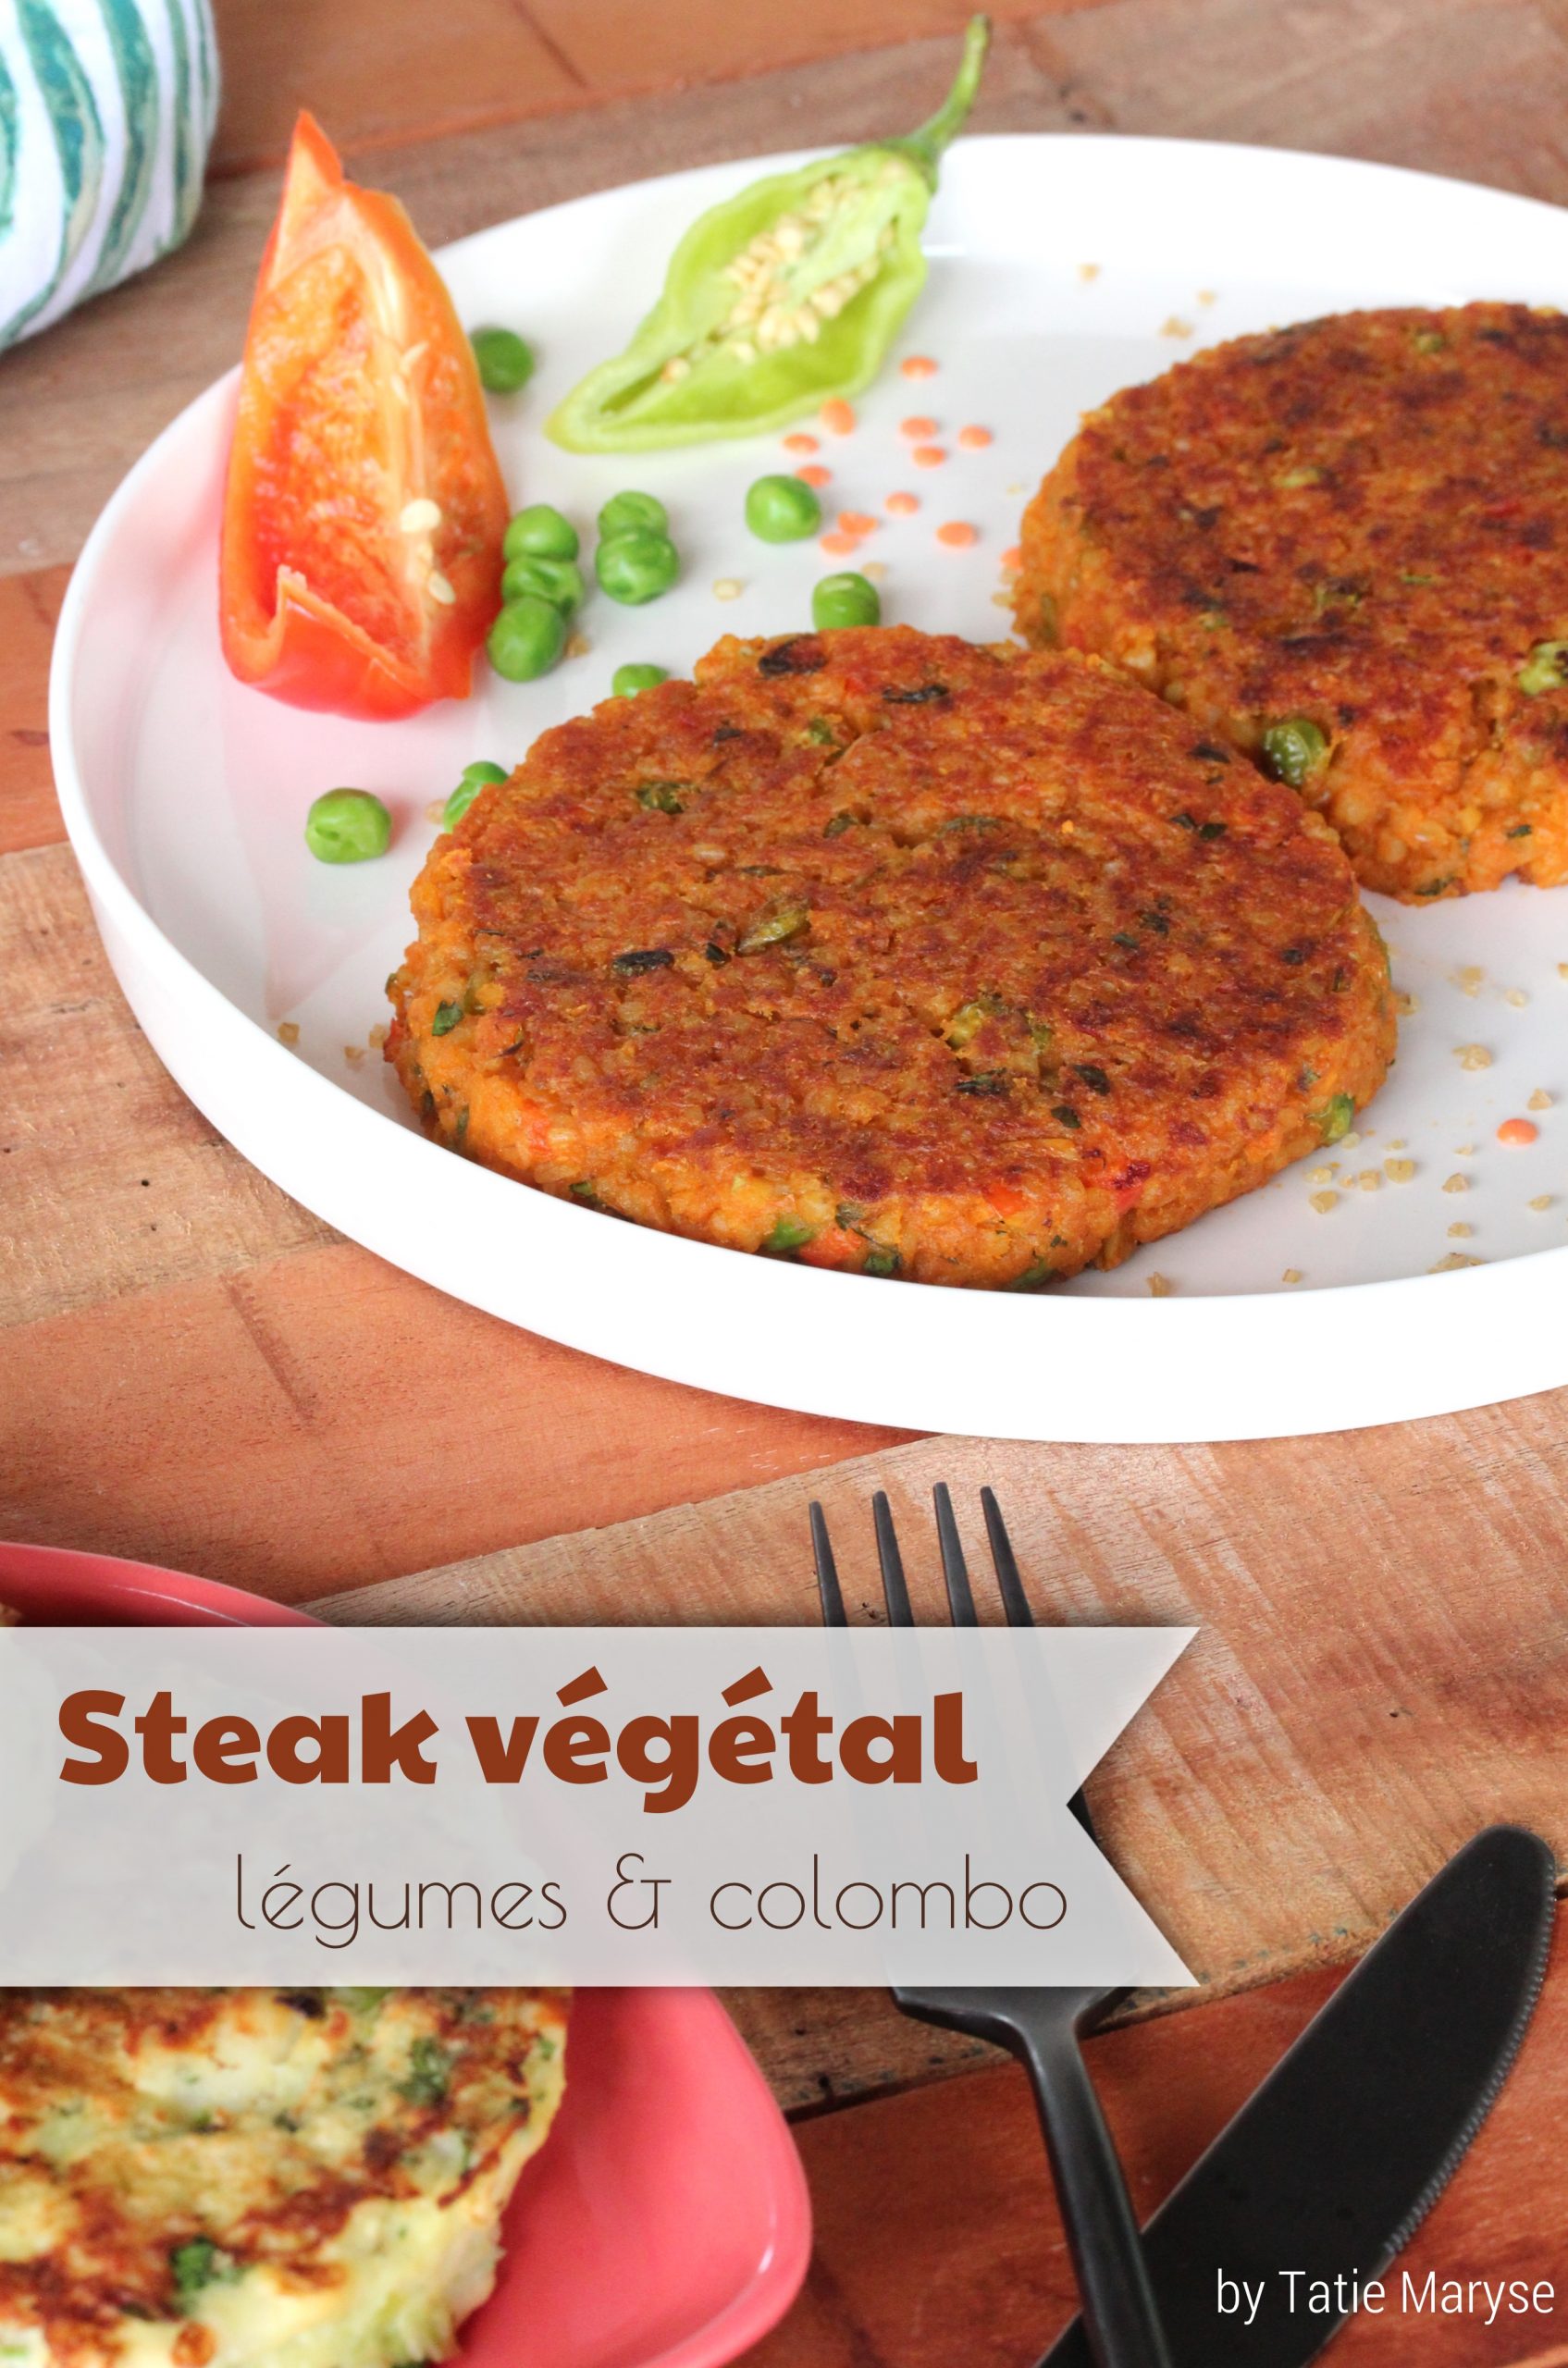 Le steak végétal au colombo, on en redemande même les carnivores !